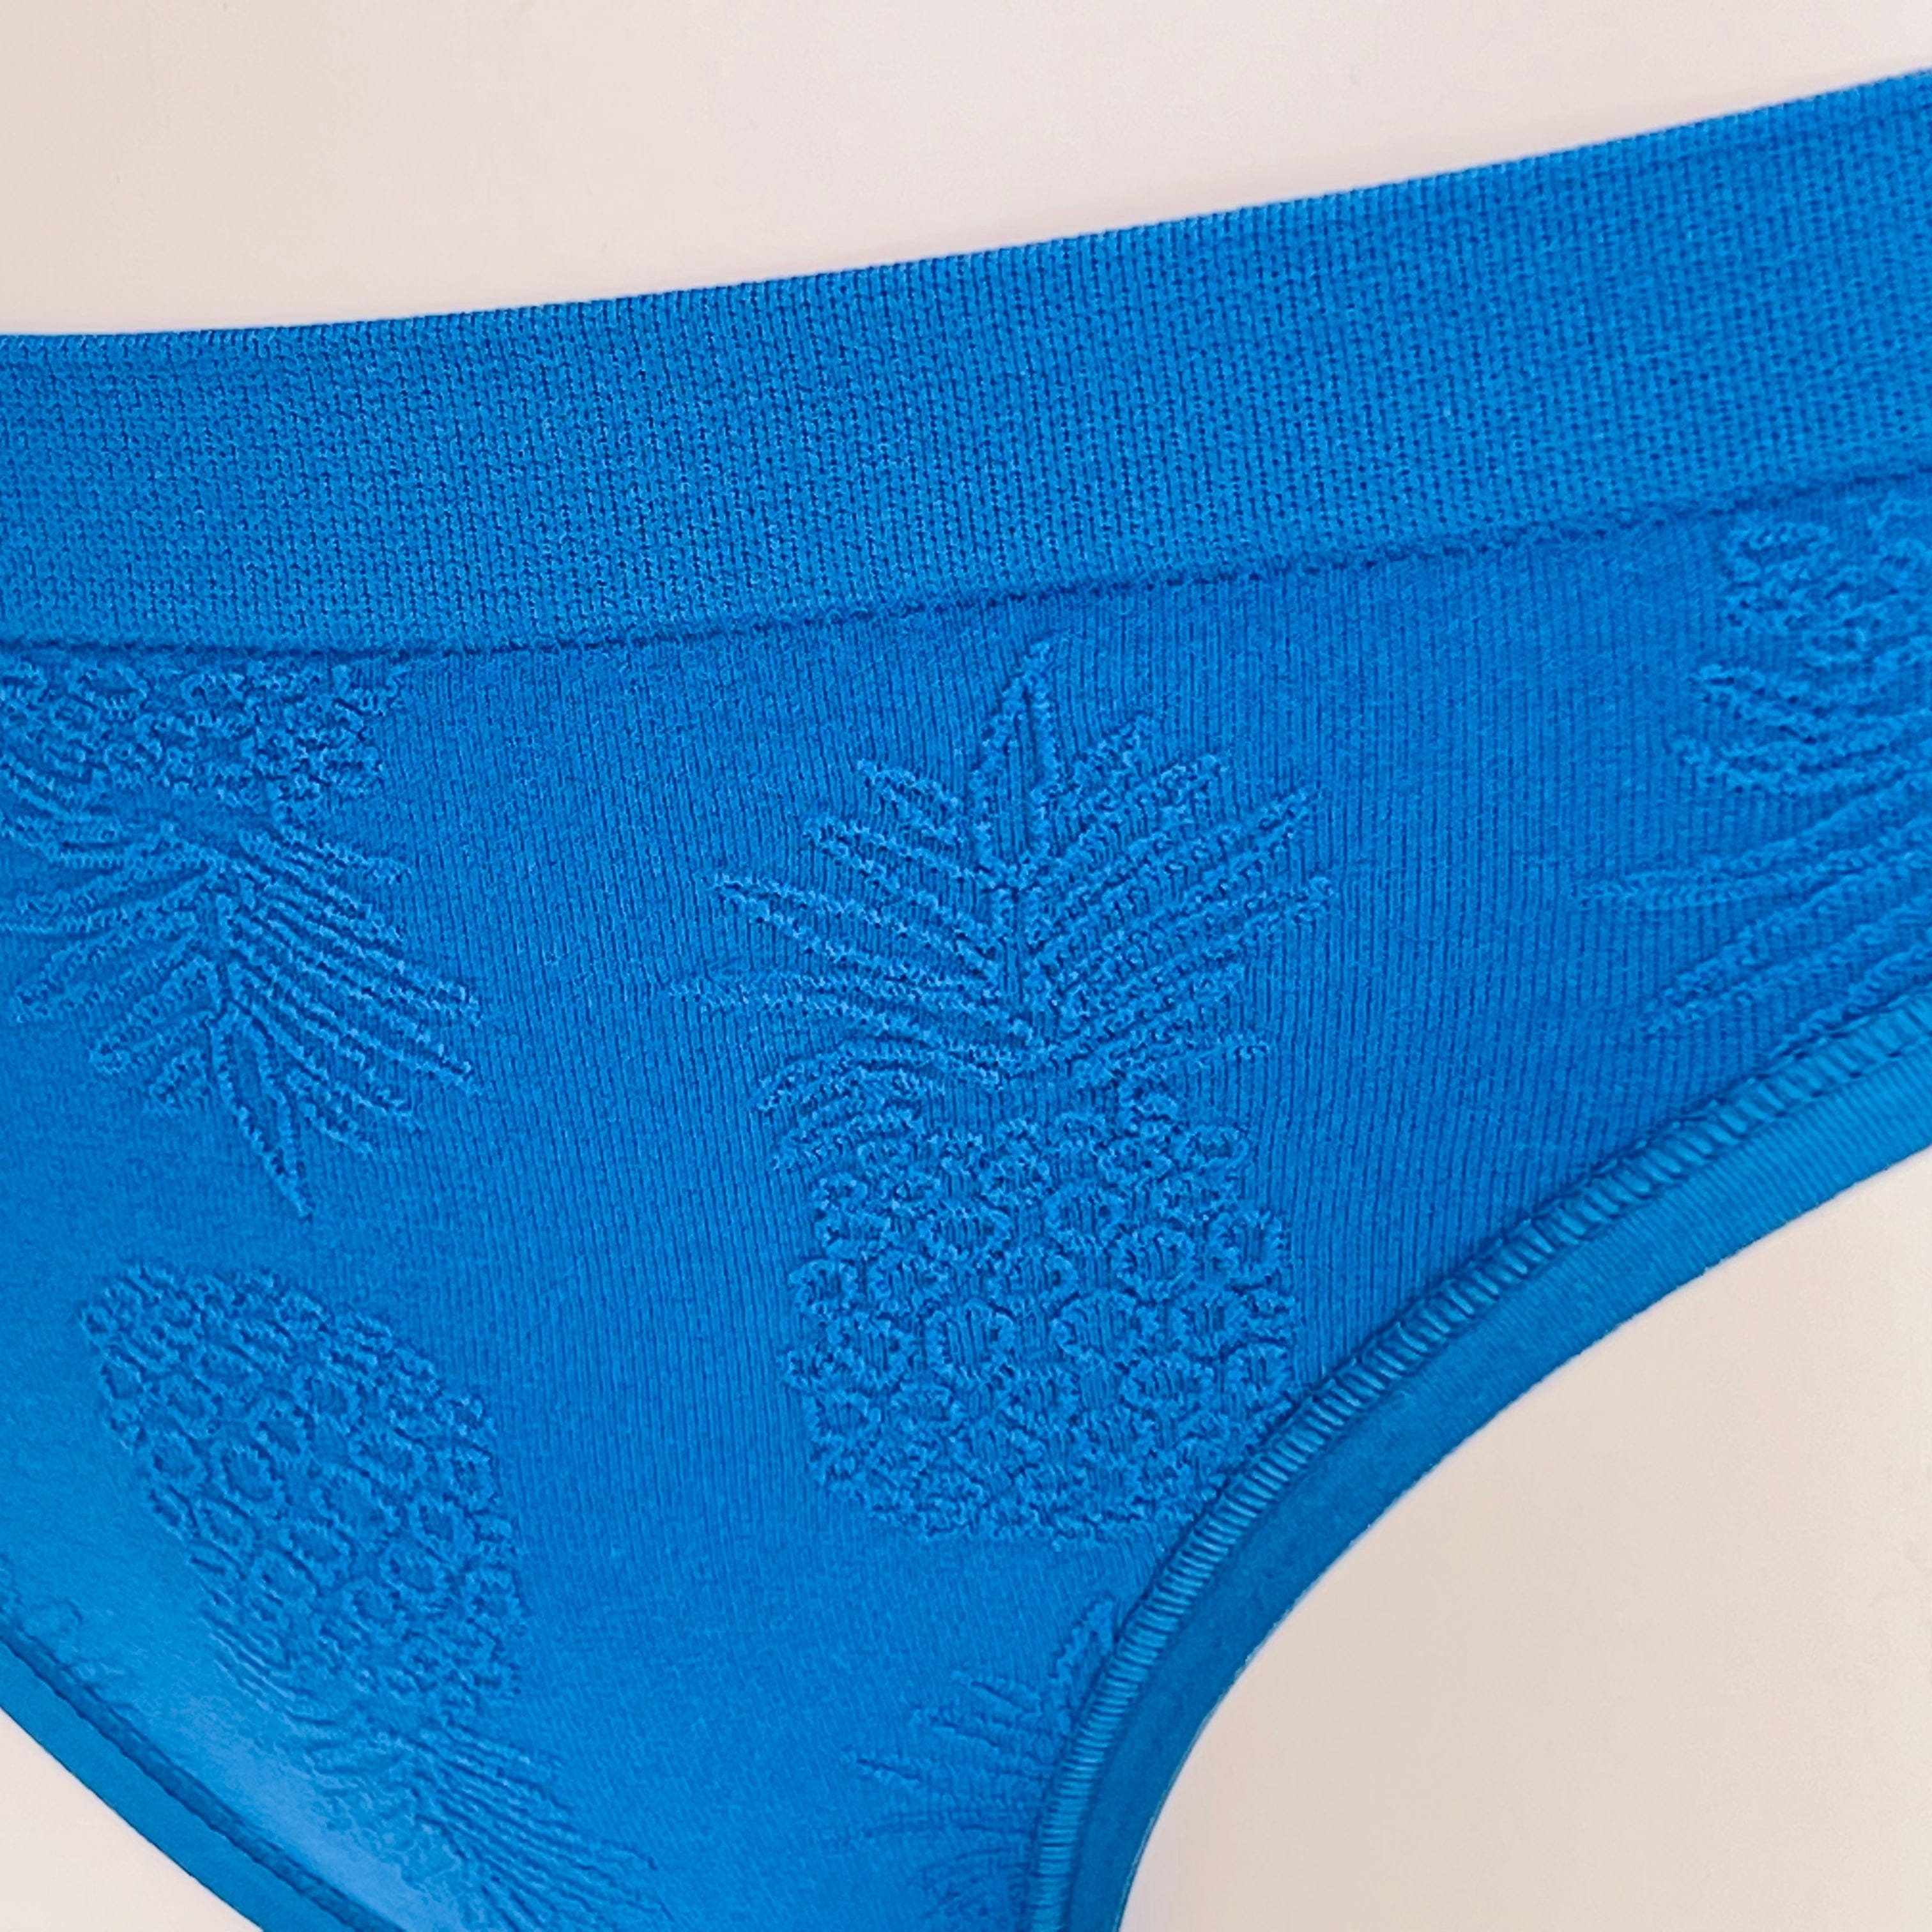 Kalhotky se vzory Ananasů - XS / Modrá / Nové štítky - Cheekini Victoria’s Secret